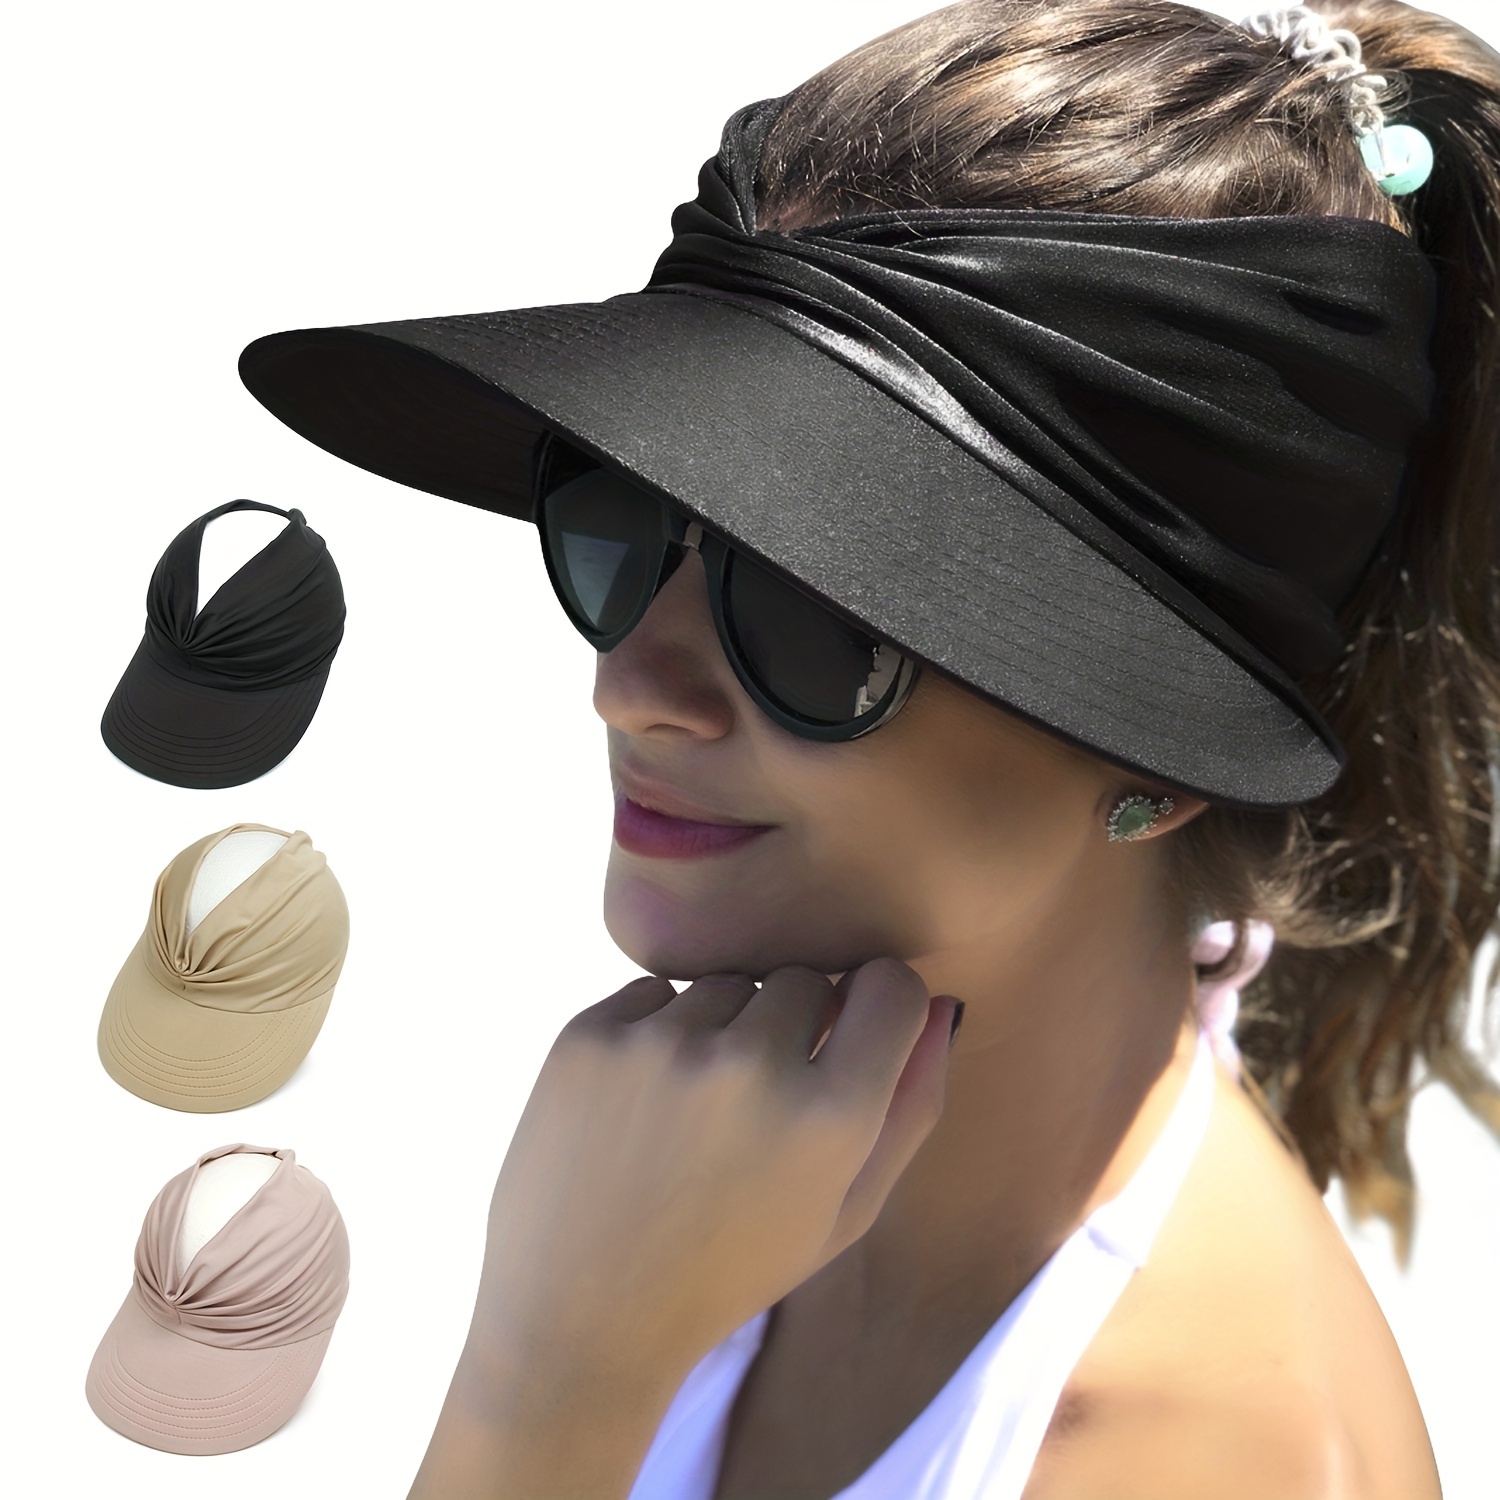 Gorra de playa de protección UV para mujer con visera grande